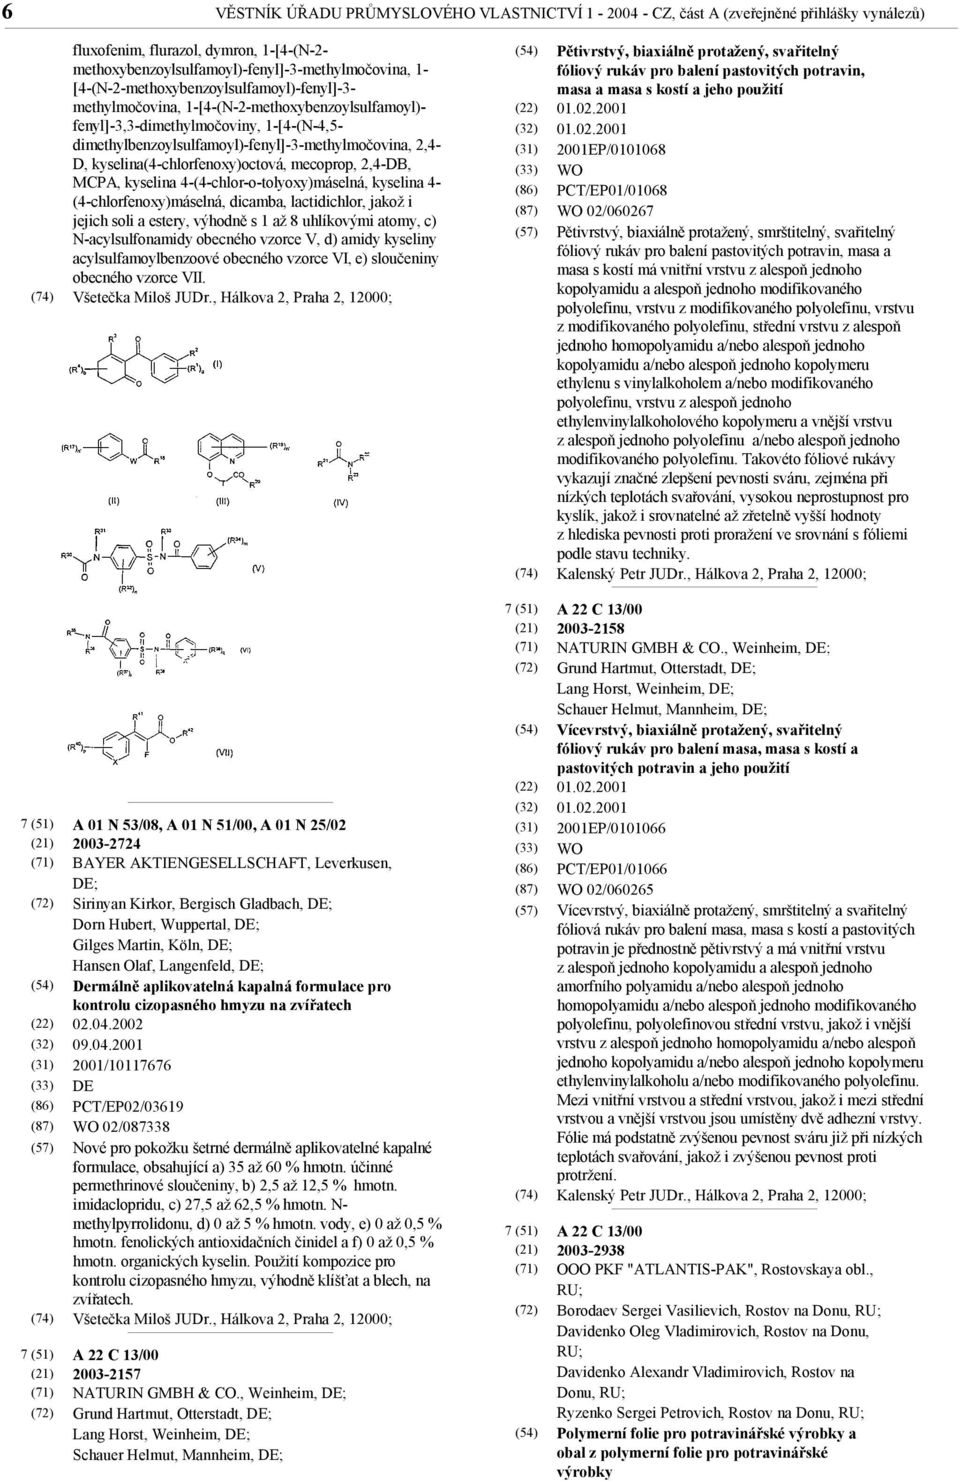 kyselina(4-chlorfenoxy)octová, mecoprop, 2,4-DB, MCPA, kyselina 4-(4-chlor-o-tolyoxy)máselná, kyselina 4- (4-chlorfenoxy)máselná, dicamba, lactidichlor, jakož i jejich soli a estery, výhodně s 1 až 8